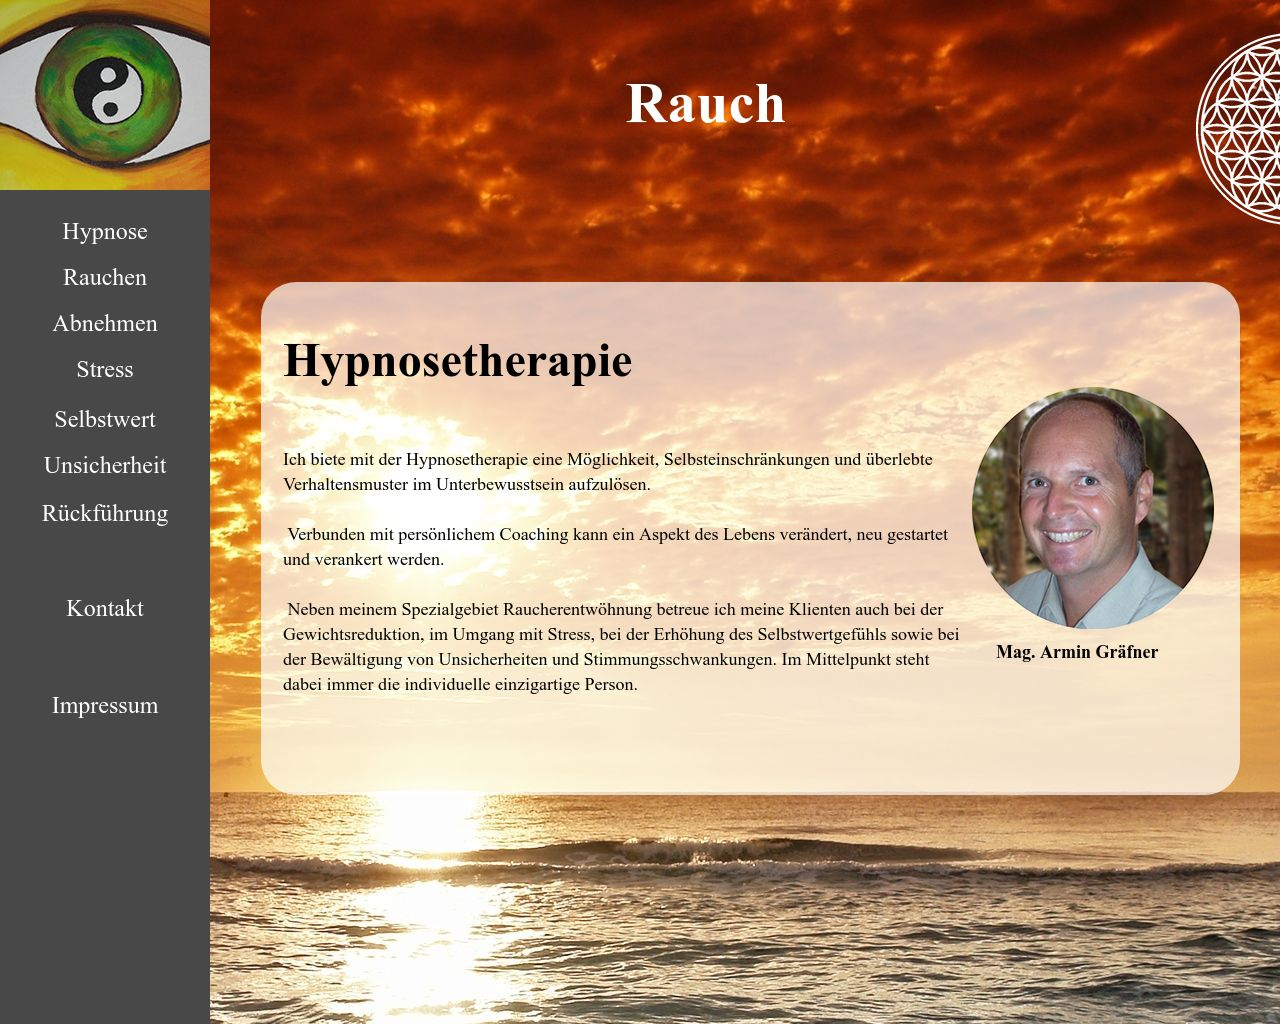 Bild Website hypnose-graefner.at in 1280x1024